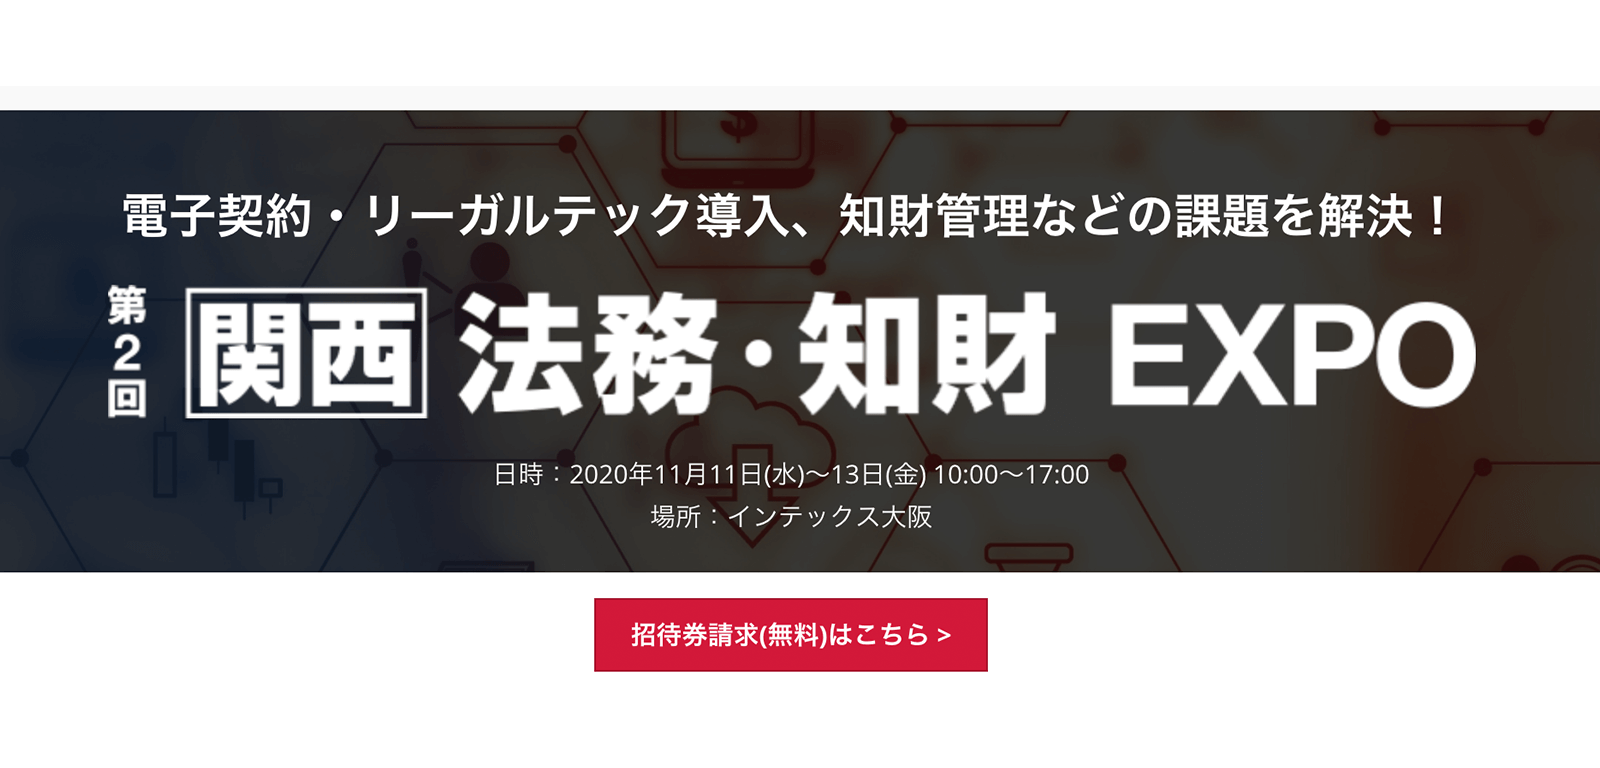 インテックス大阪で開催「第2回【関西】法務・知財EXPO」に出展